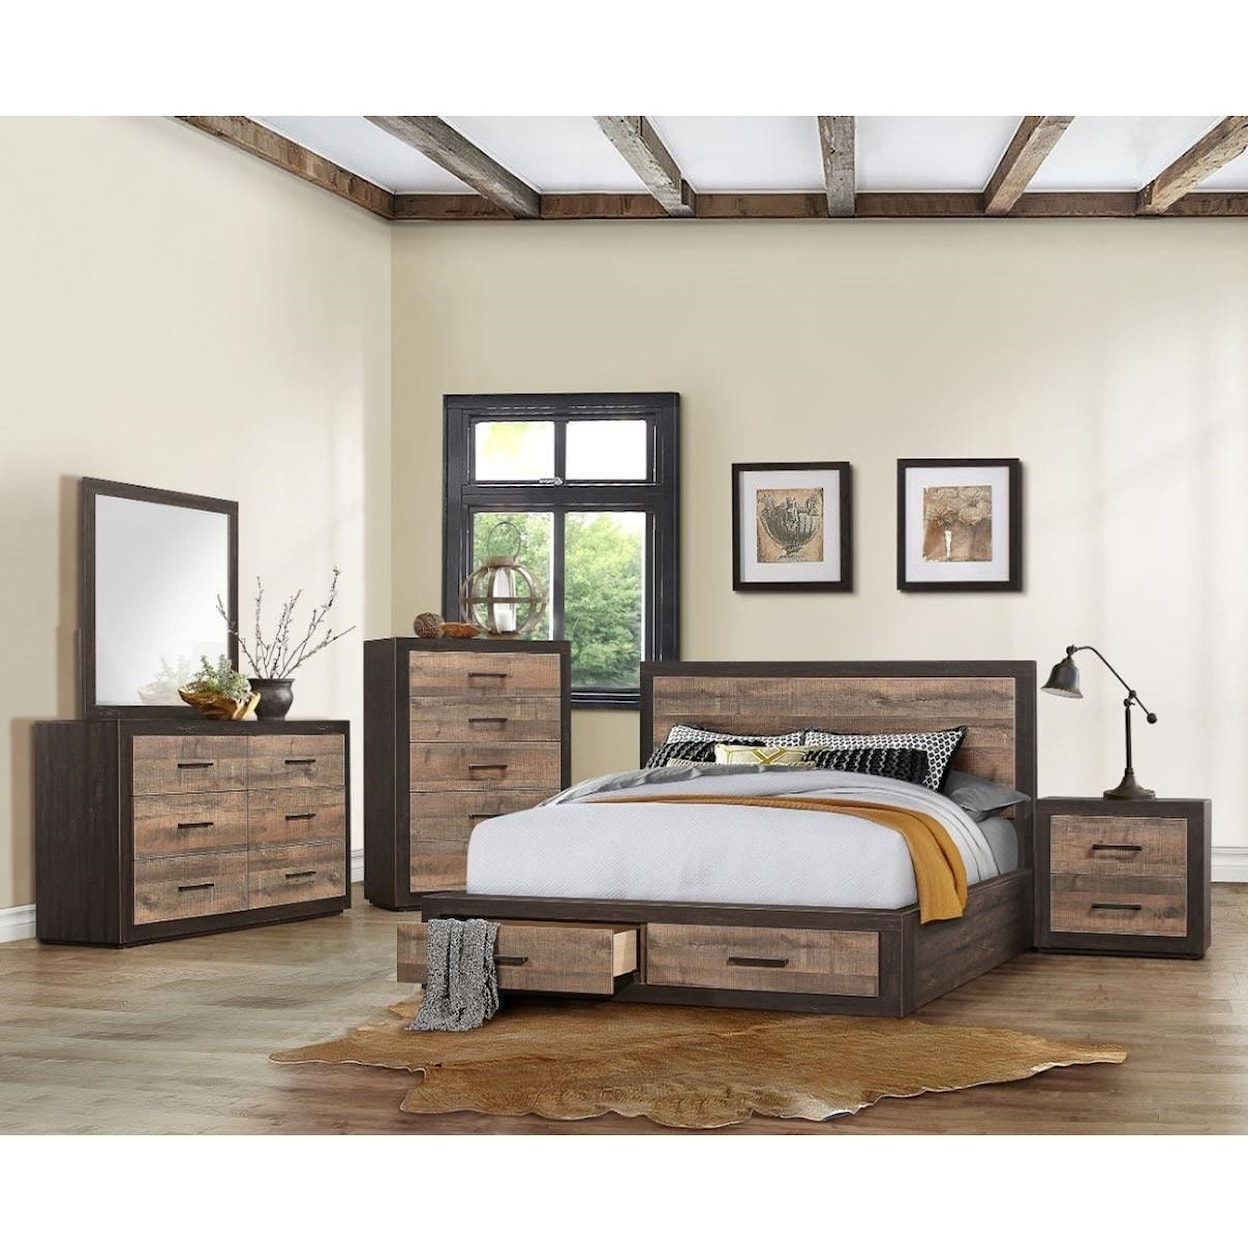 Homelegance Furniture Miter King Bedroom Group